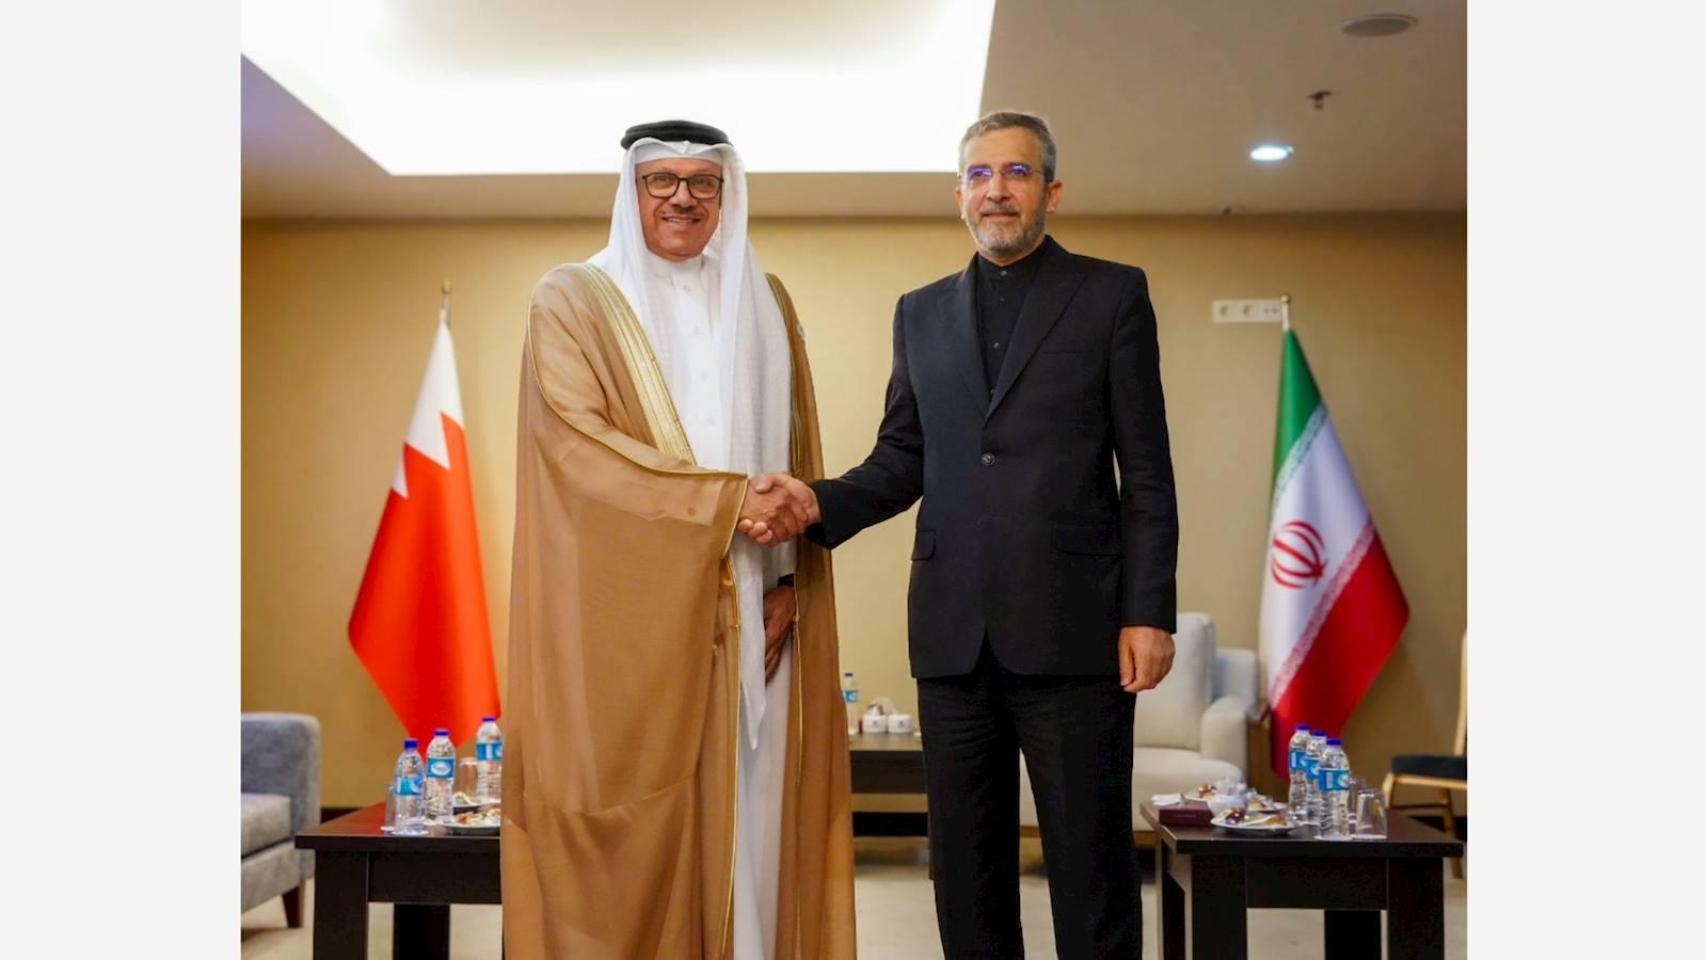 Abdullatif bin Rashid Al Zayani, ministro de asuntos exteriores de Baréin y Alí Baquerí, ministro de asuntos exteriores iraní, en el Diálogo de Cooperación Asiática.